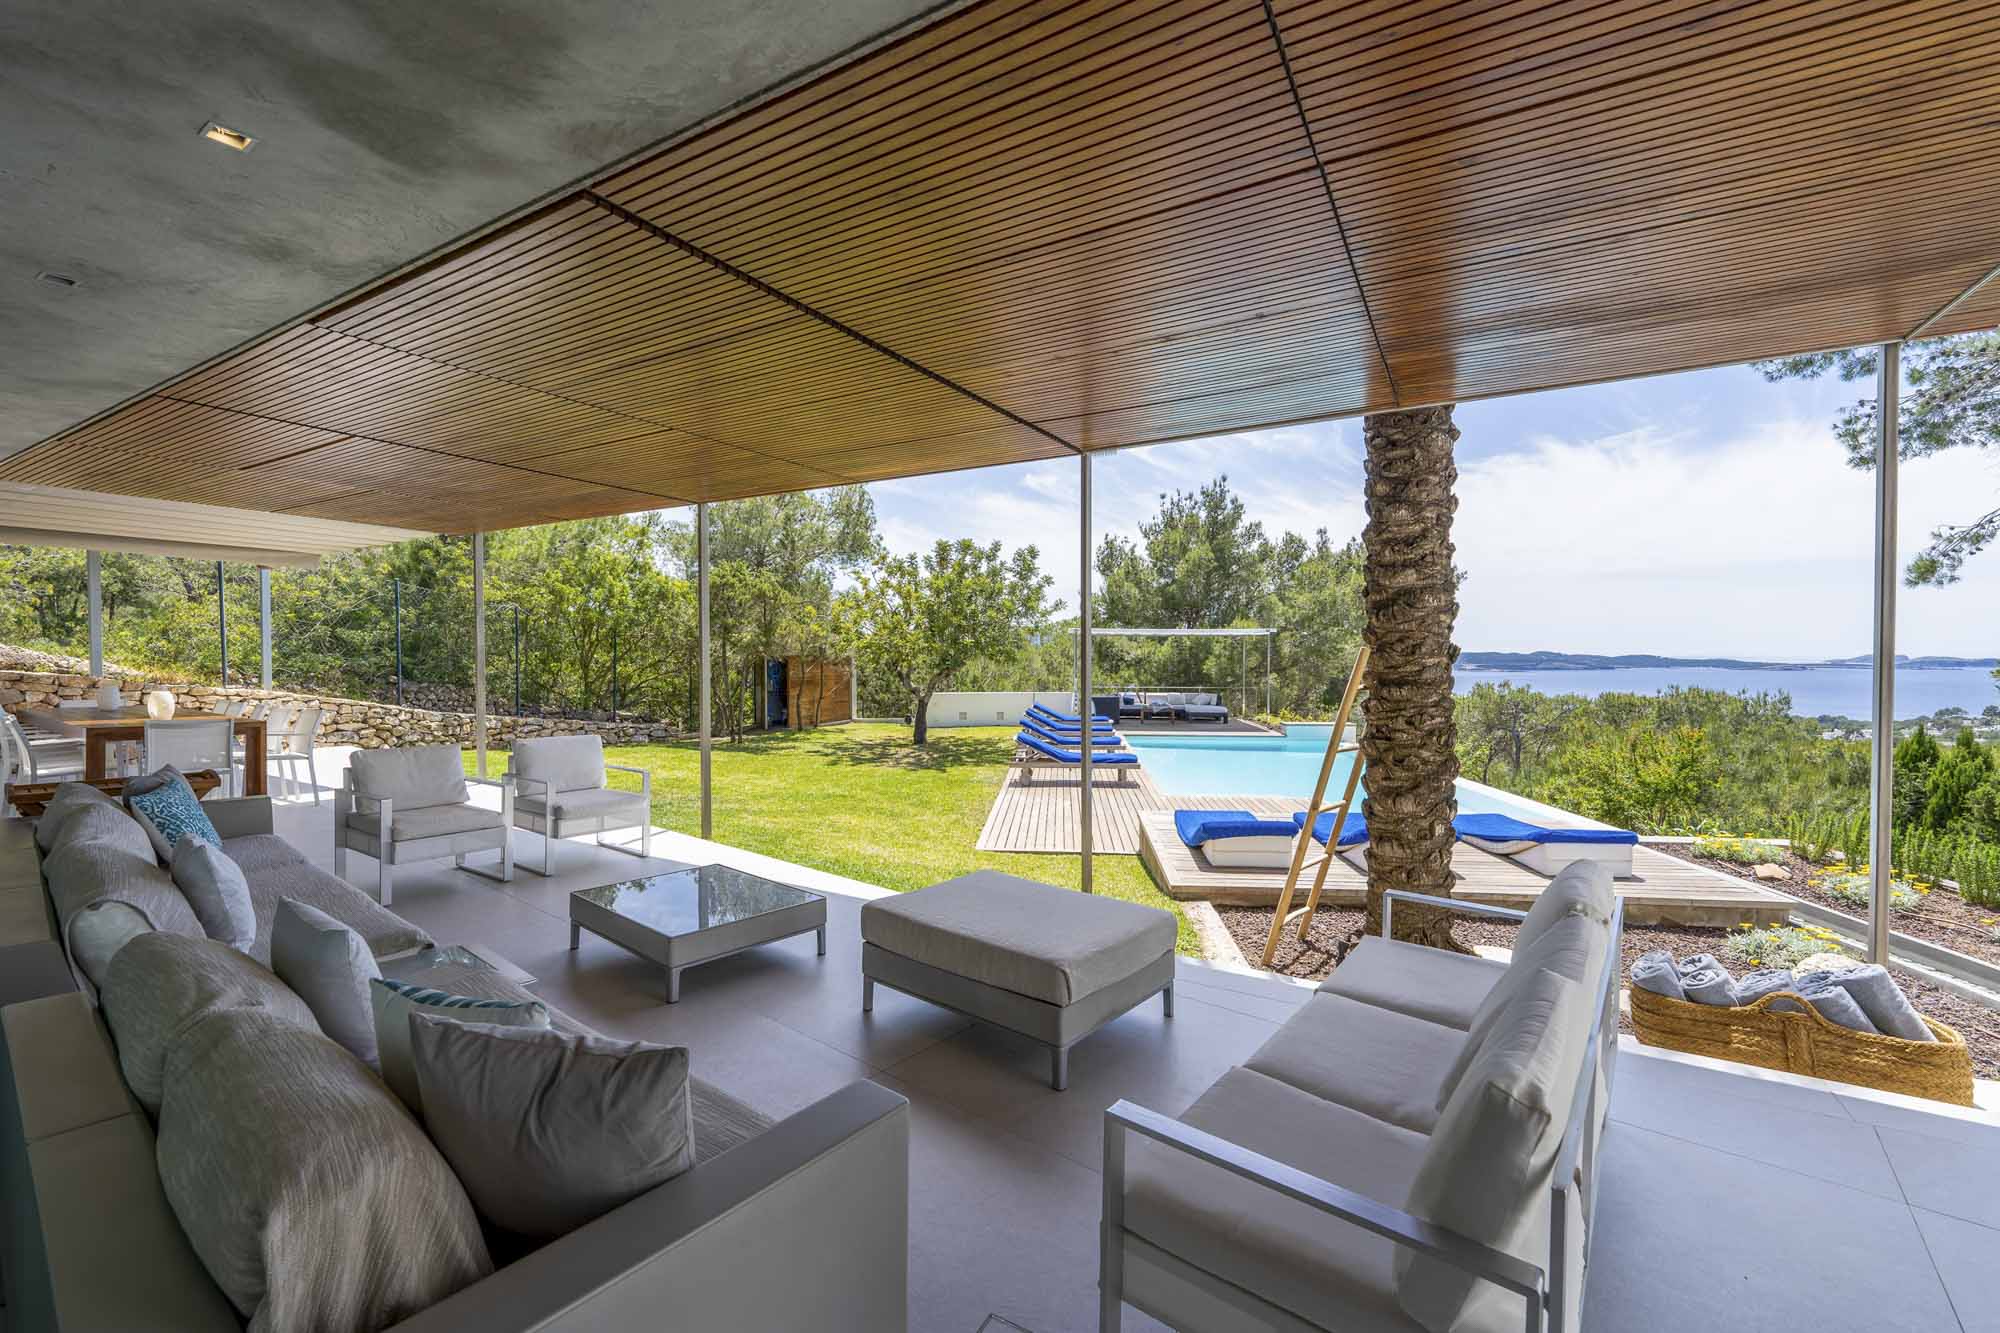 Villa aislada Roca Llisa Ibiza ubicada en un entorno rústico con exuberante vegetación y detalles en las paredes de piedra, en espera de modernización